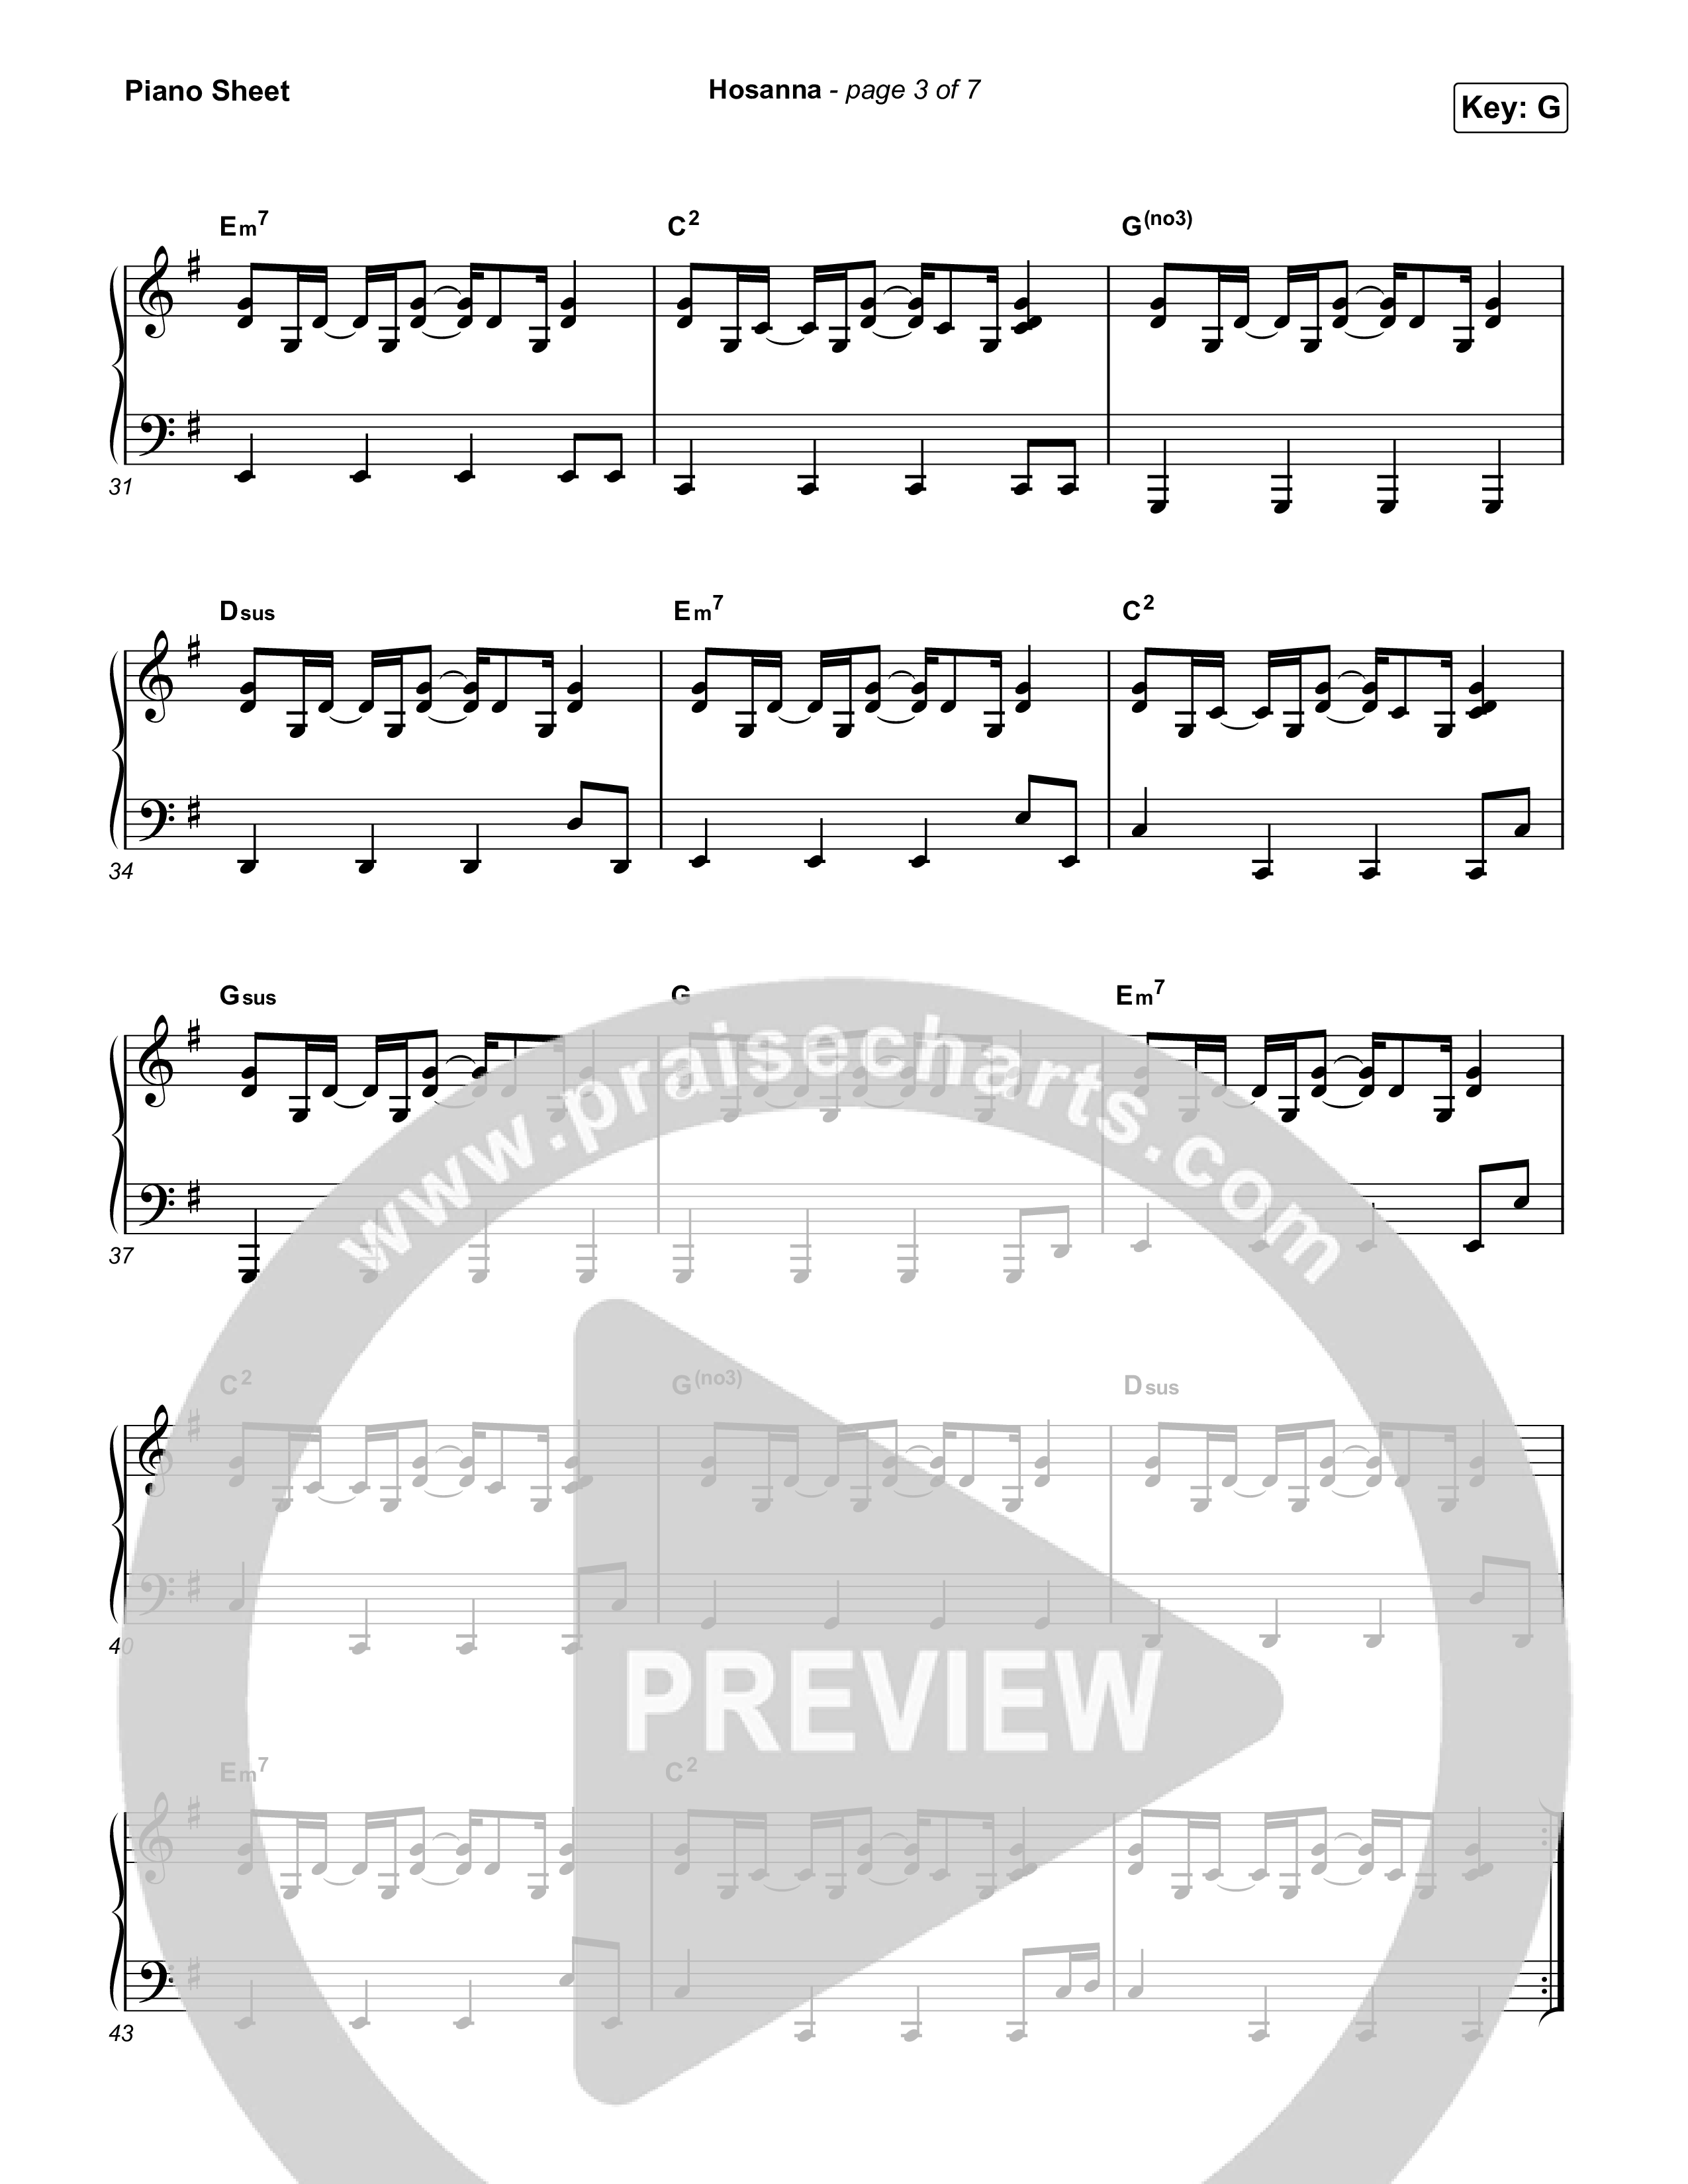 Hosanna (Praise Is Rising) Piano Sheet (Paul Baloche)